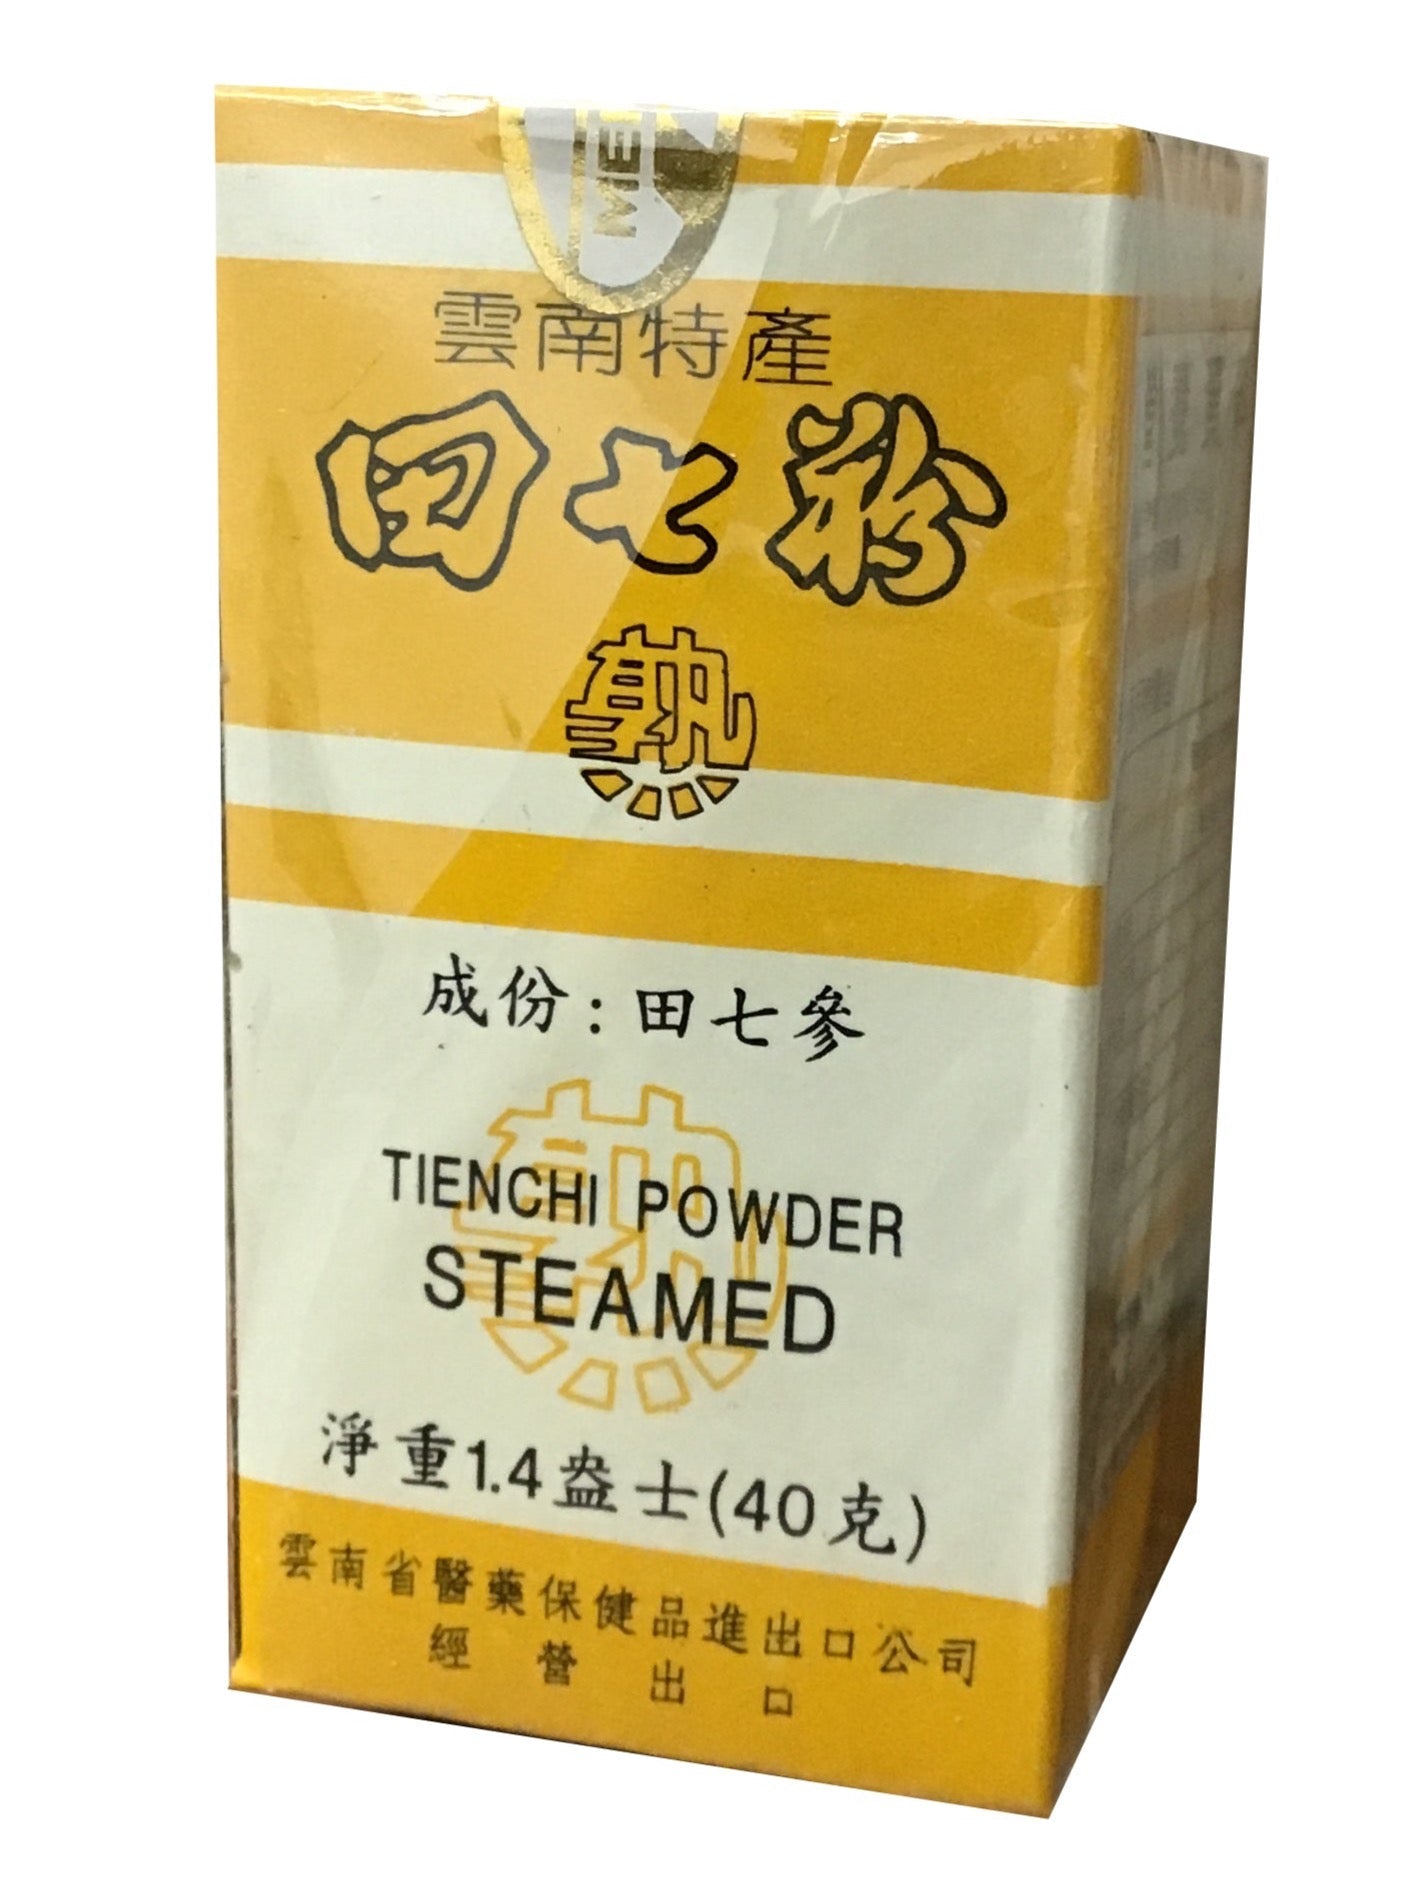 Tienchi Powder Steamed (40g) 菜花牌 田七粉 (40克)